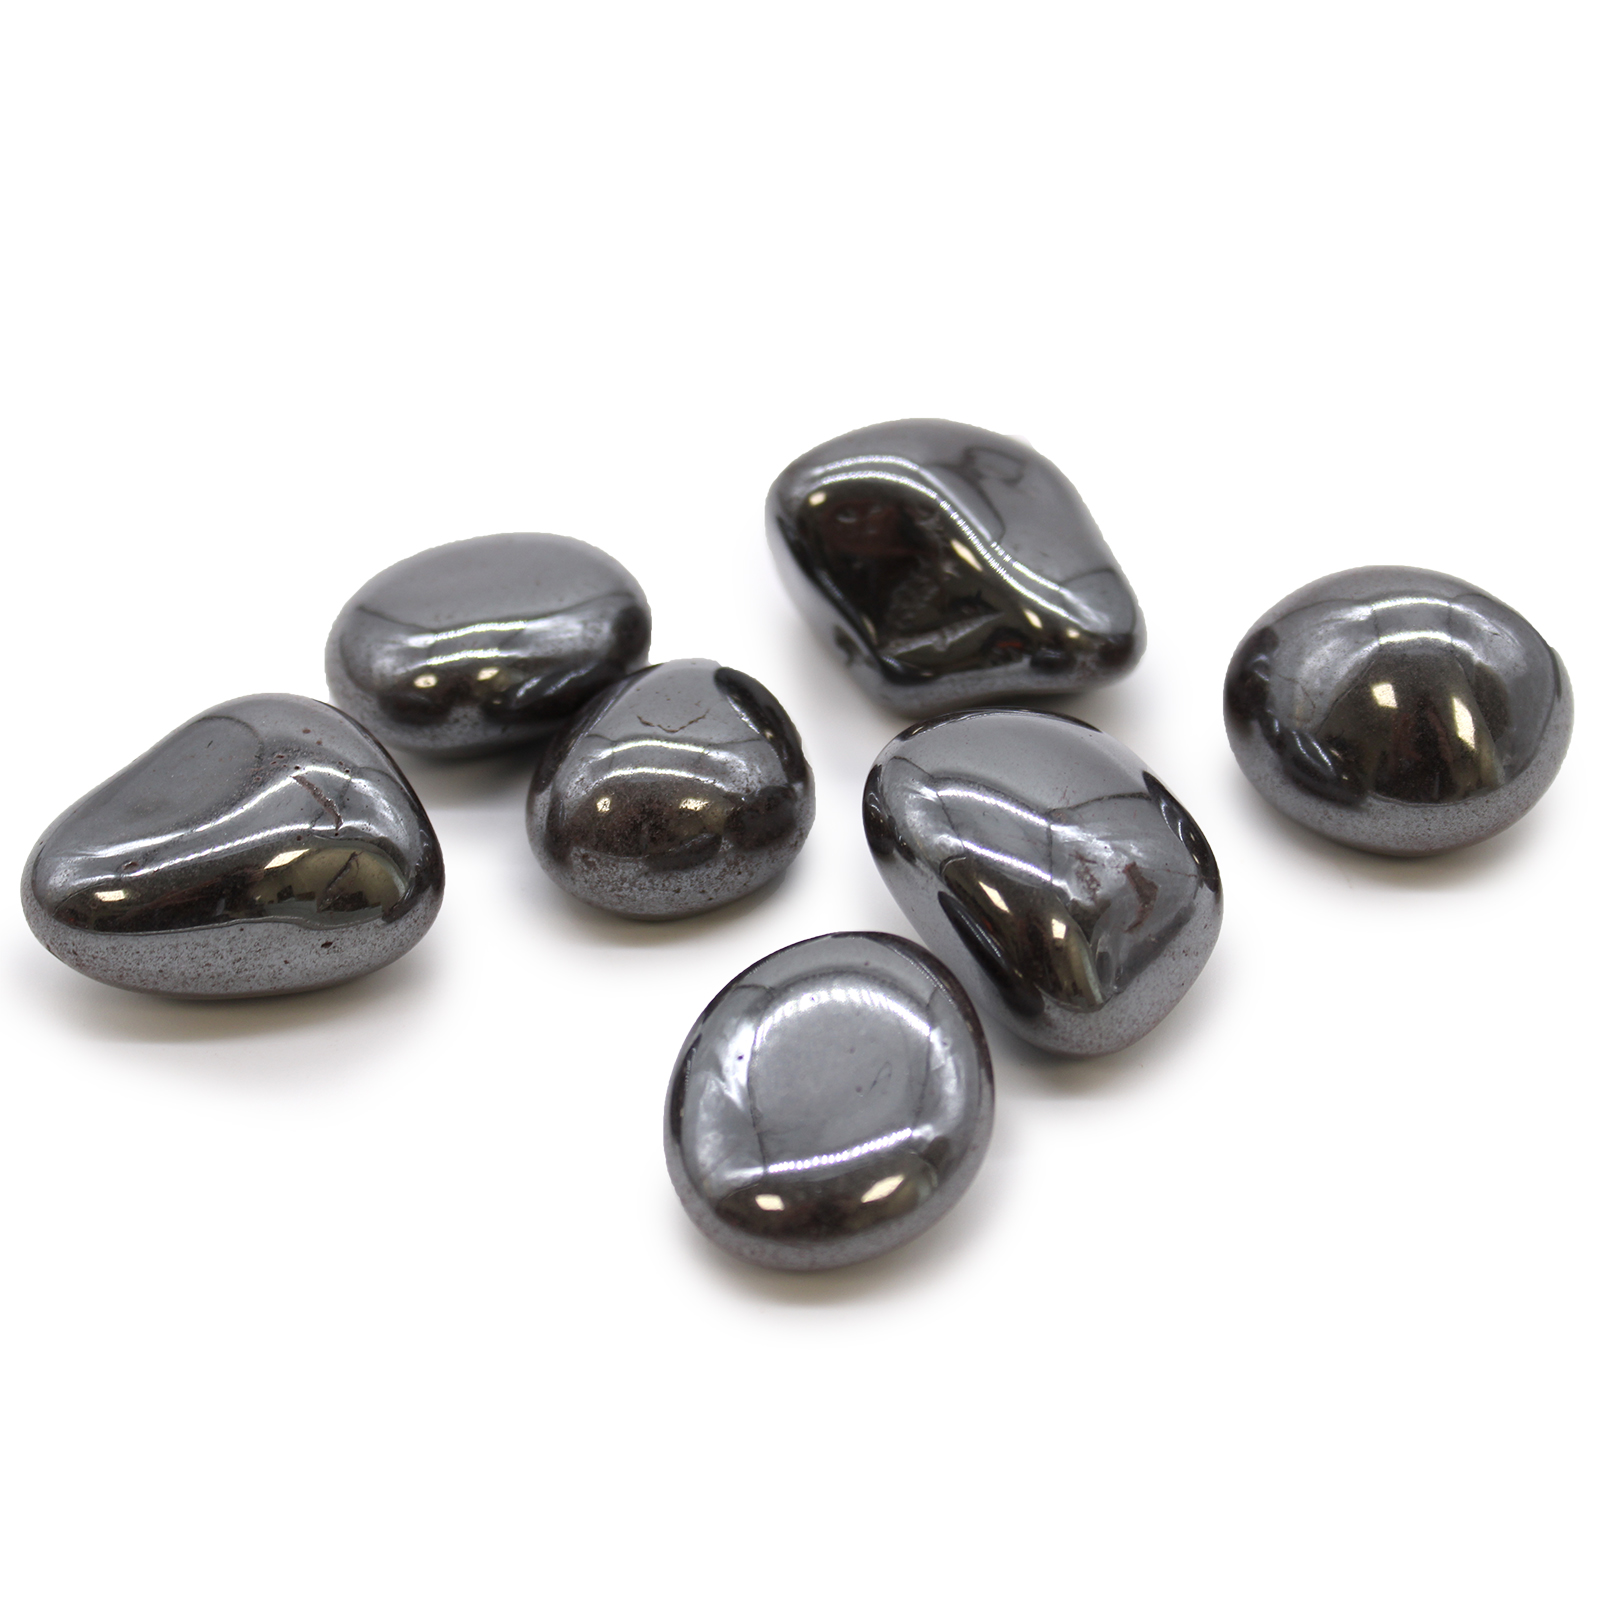 XL Tumble Stones - Hematite